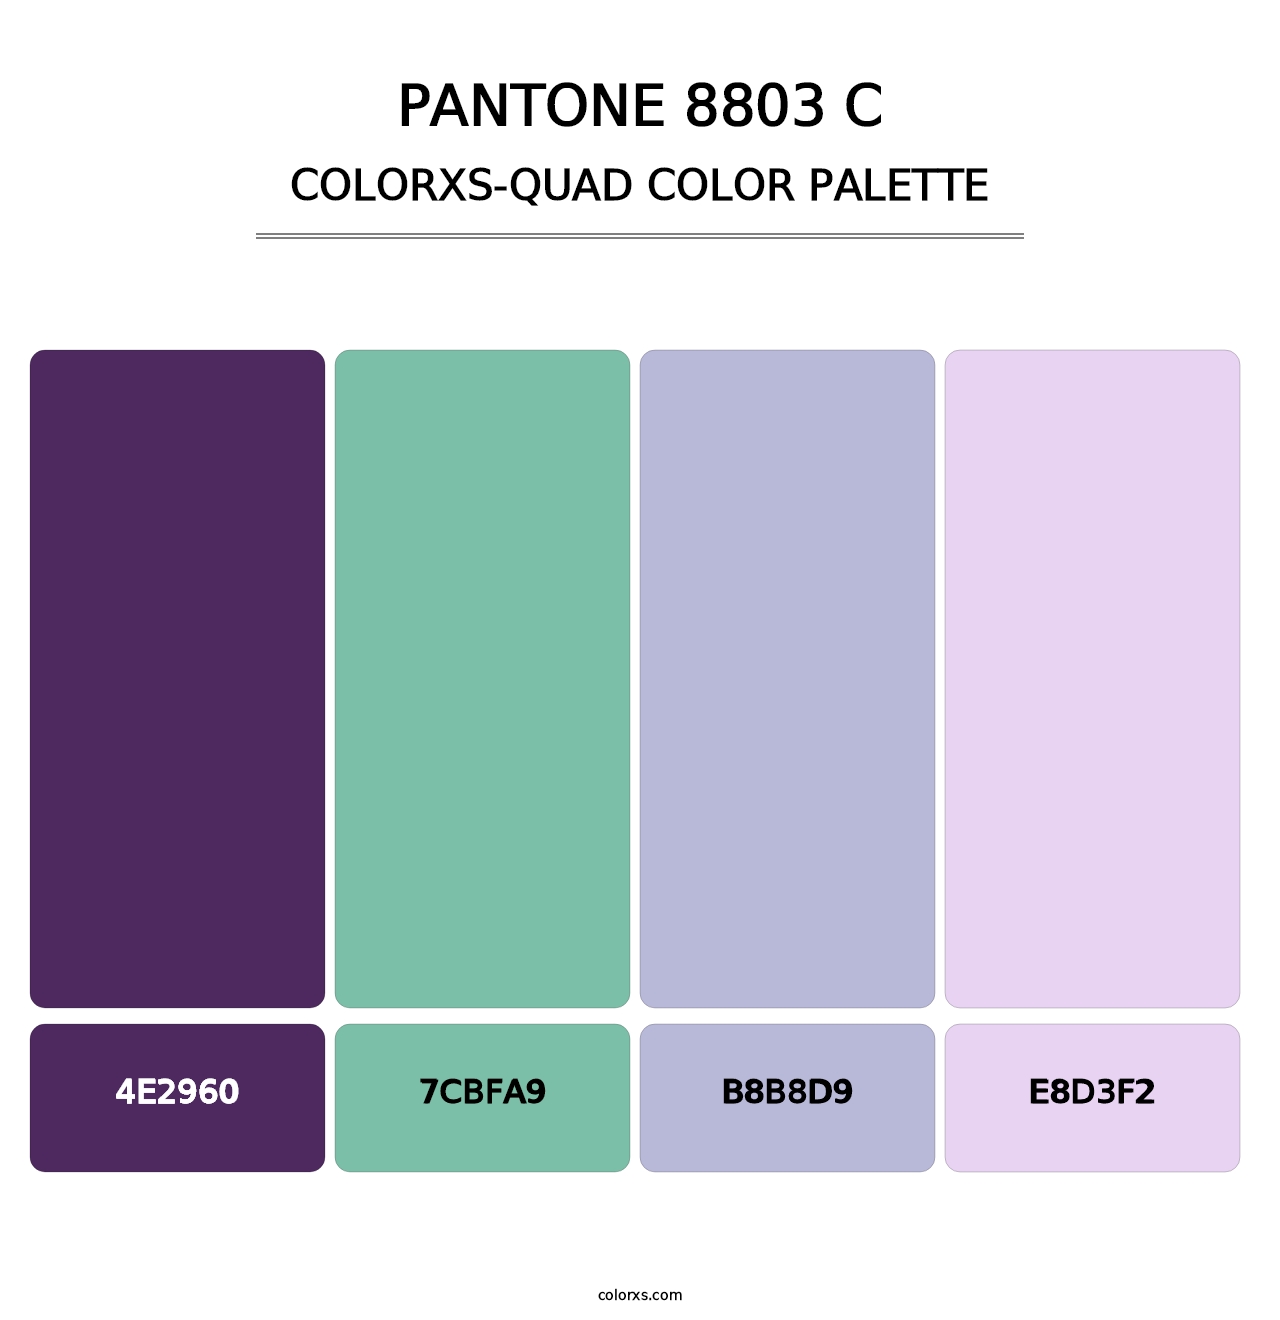 PANTONE 8803 C - Colorxs Quad Palette